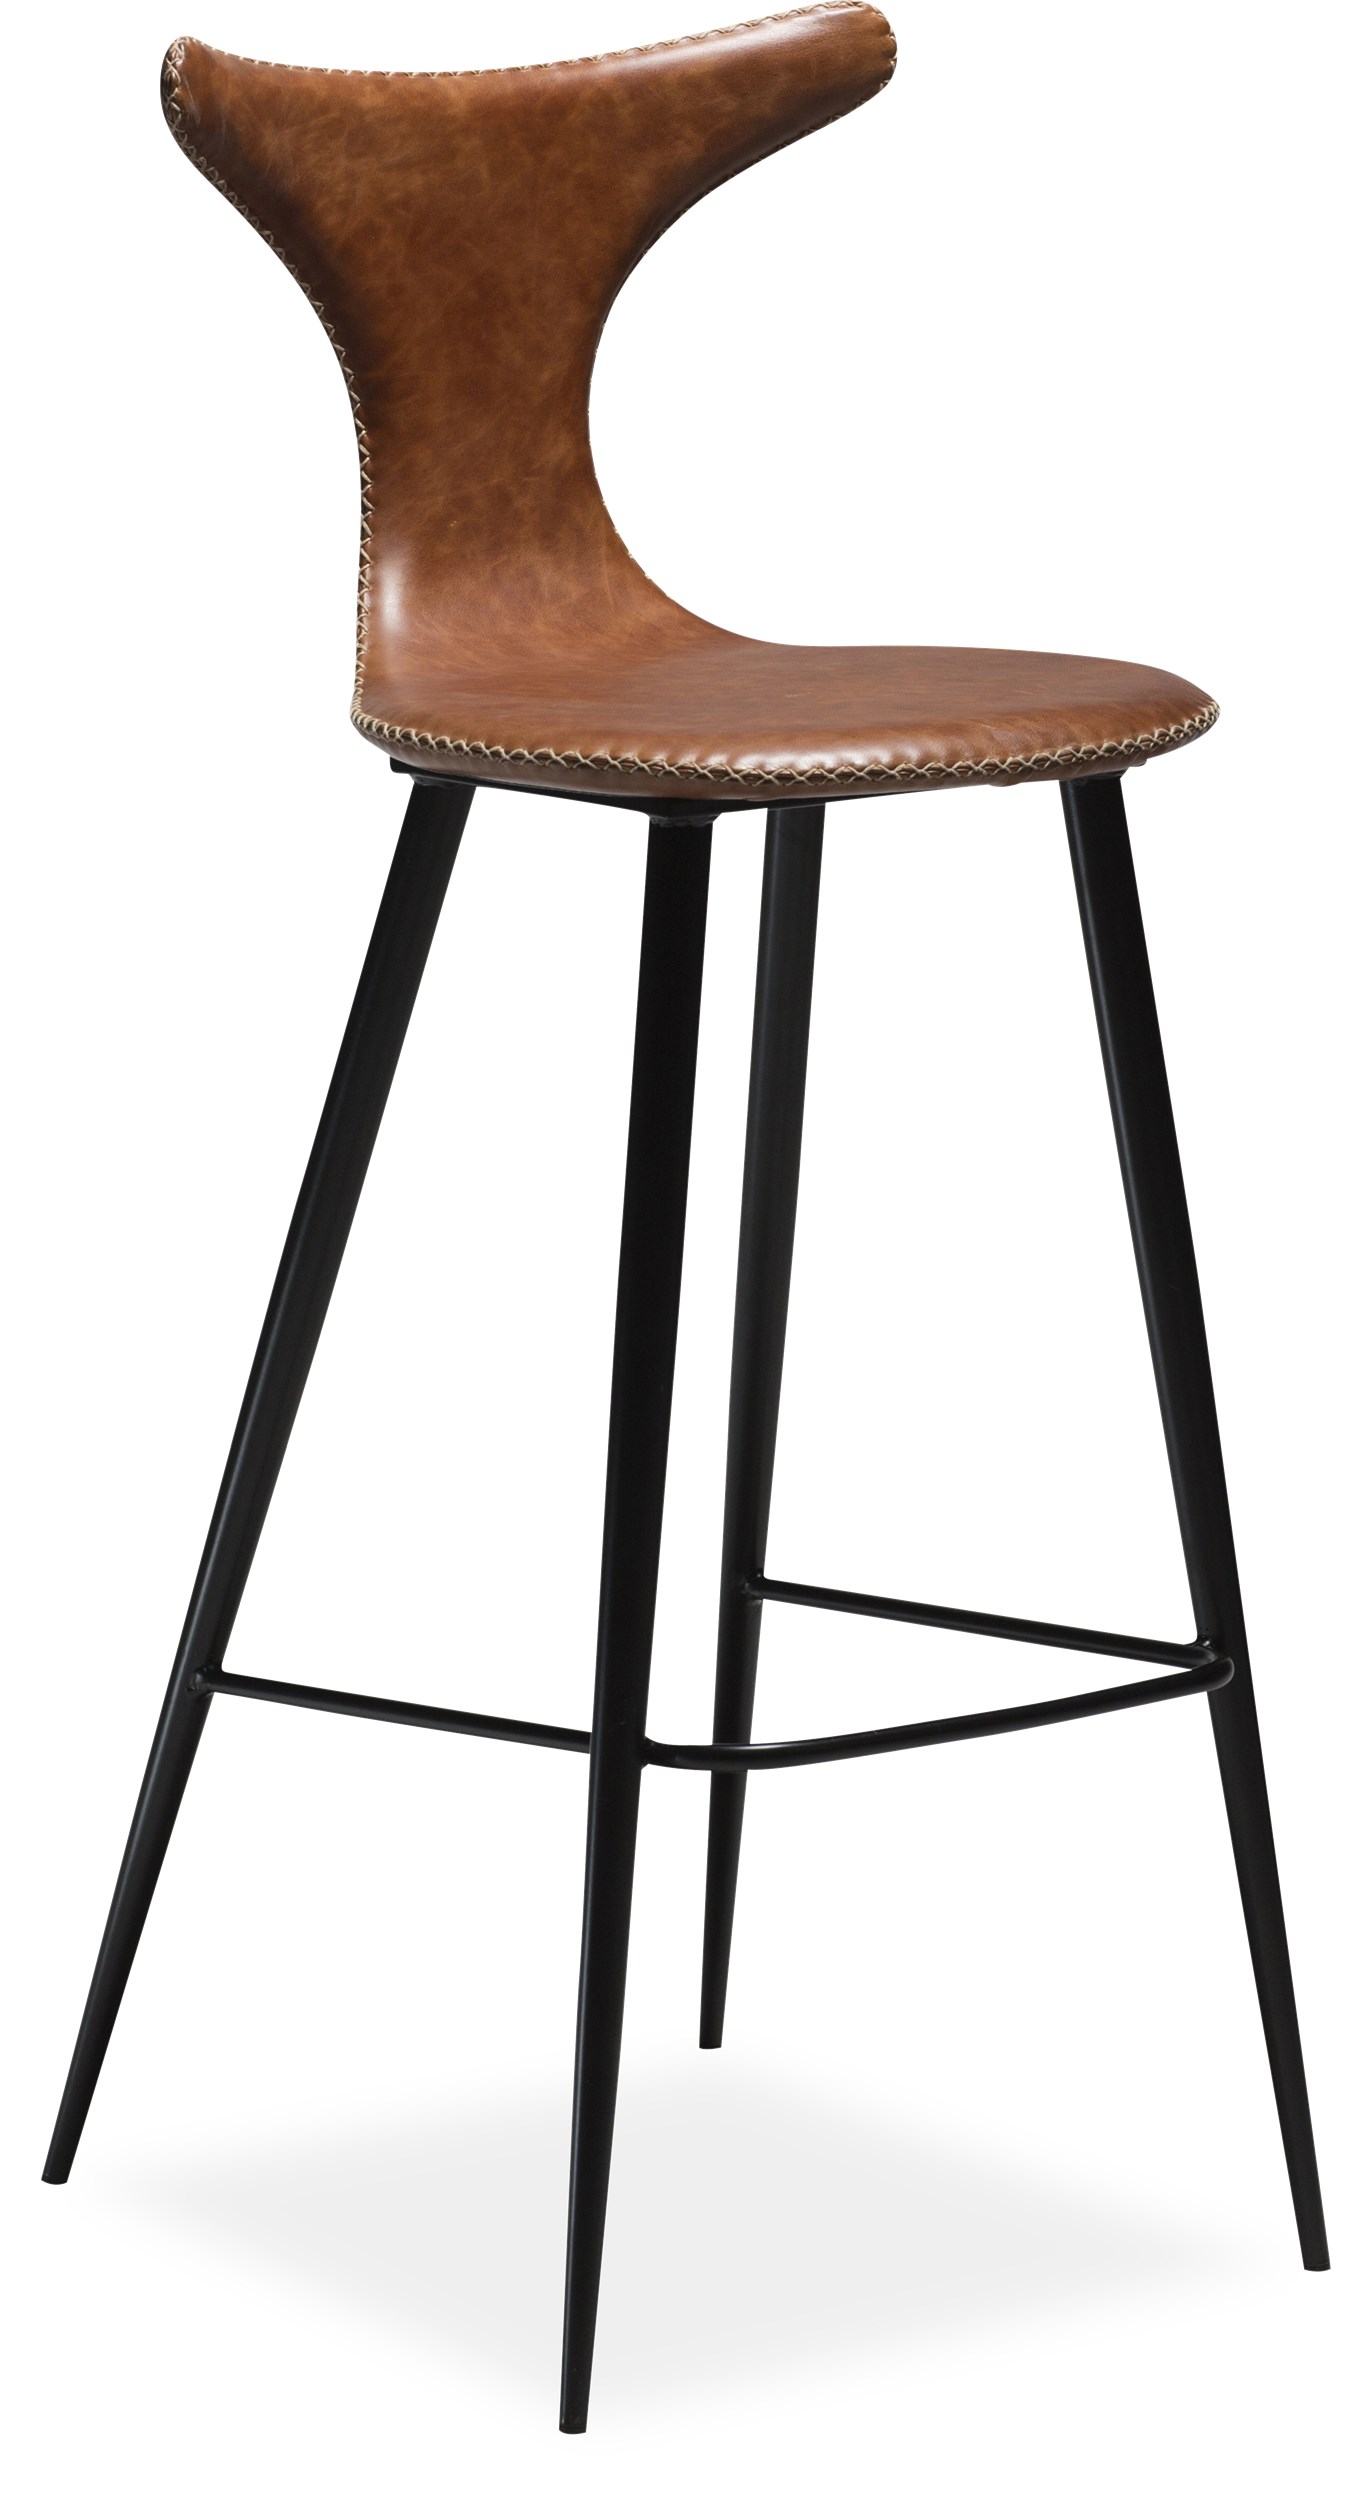 Dolphin Barstol - Sæde i vintage lysebrunt kunstlæder, med kontrastsyninger og runde ben i sortlakeret metal